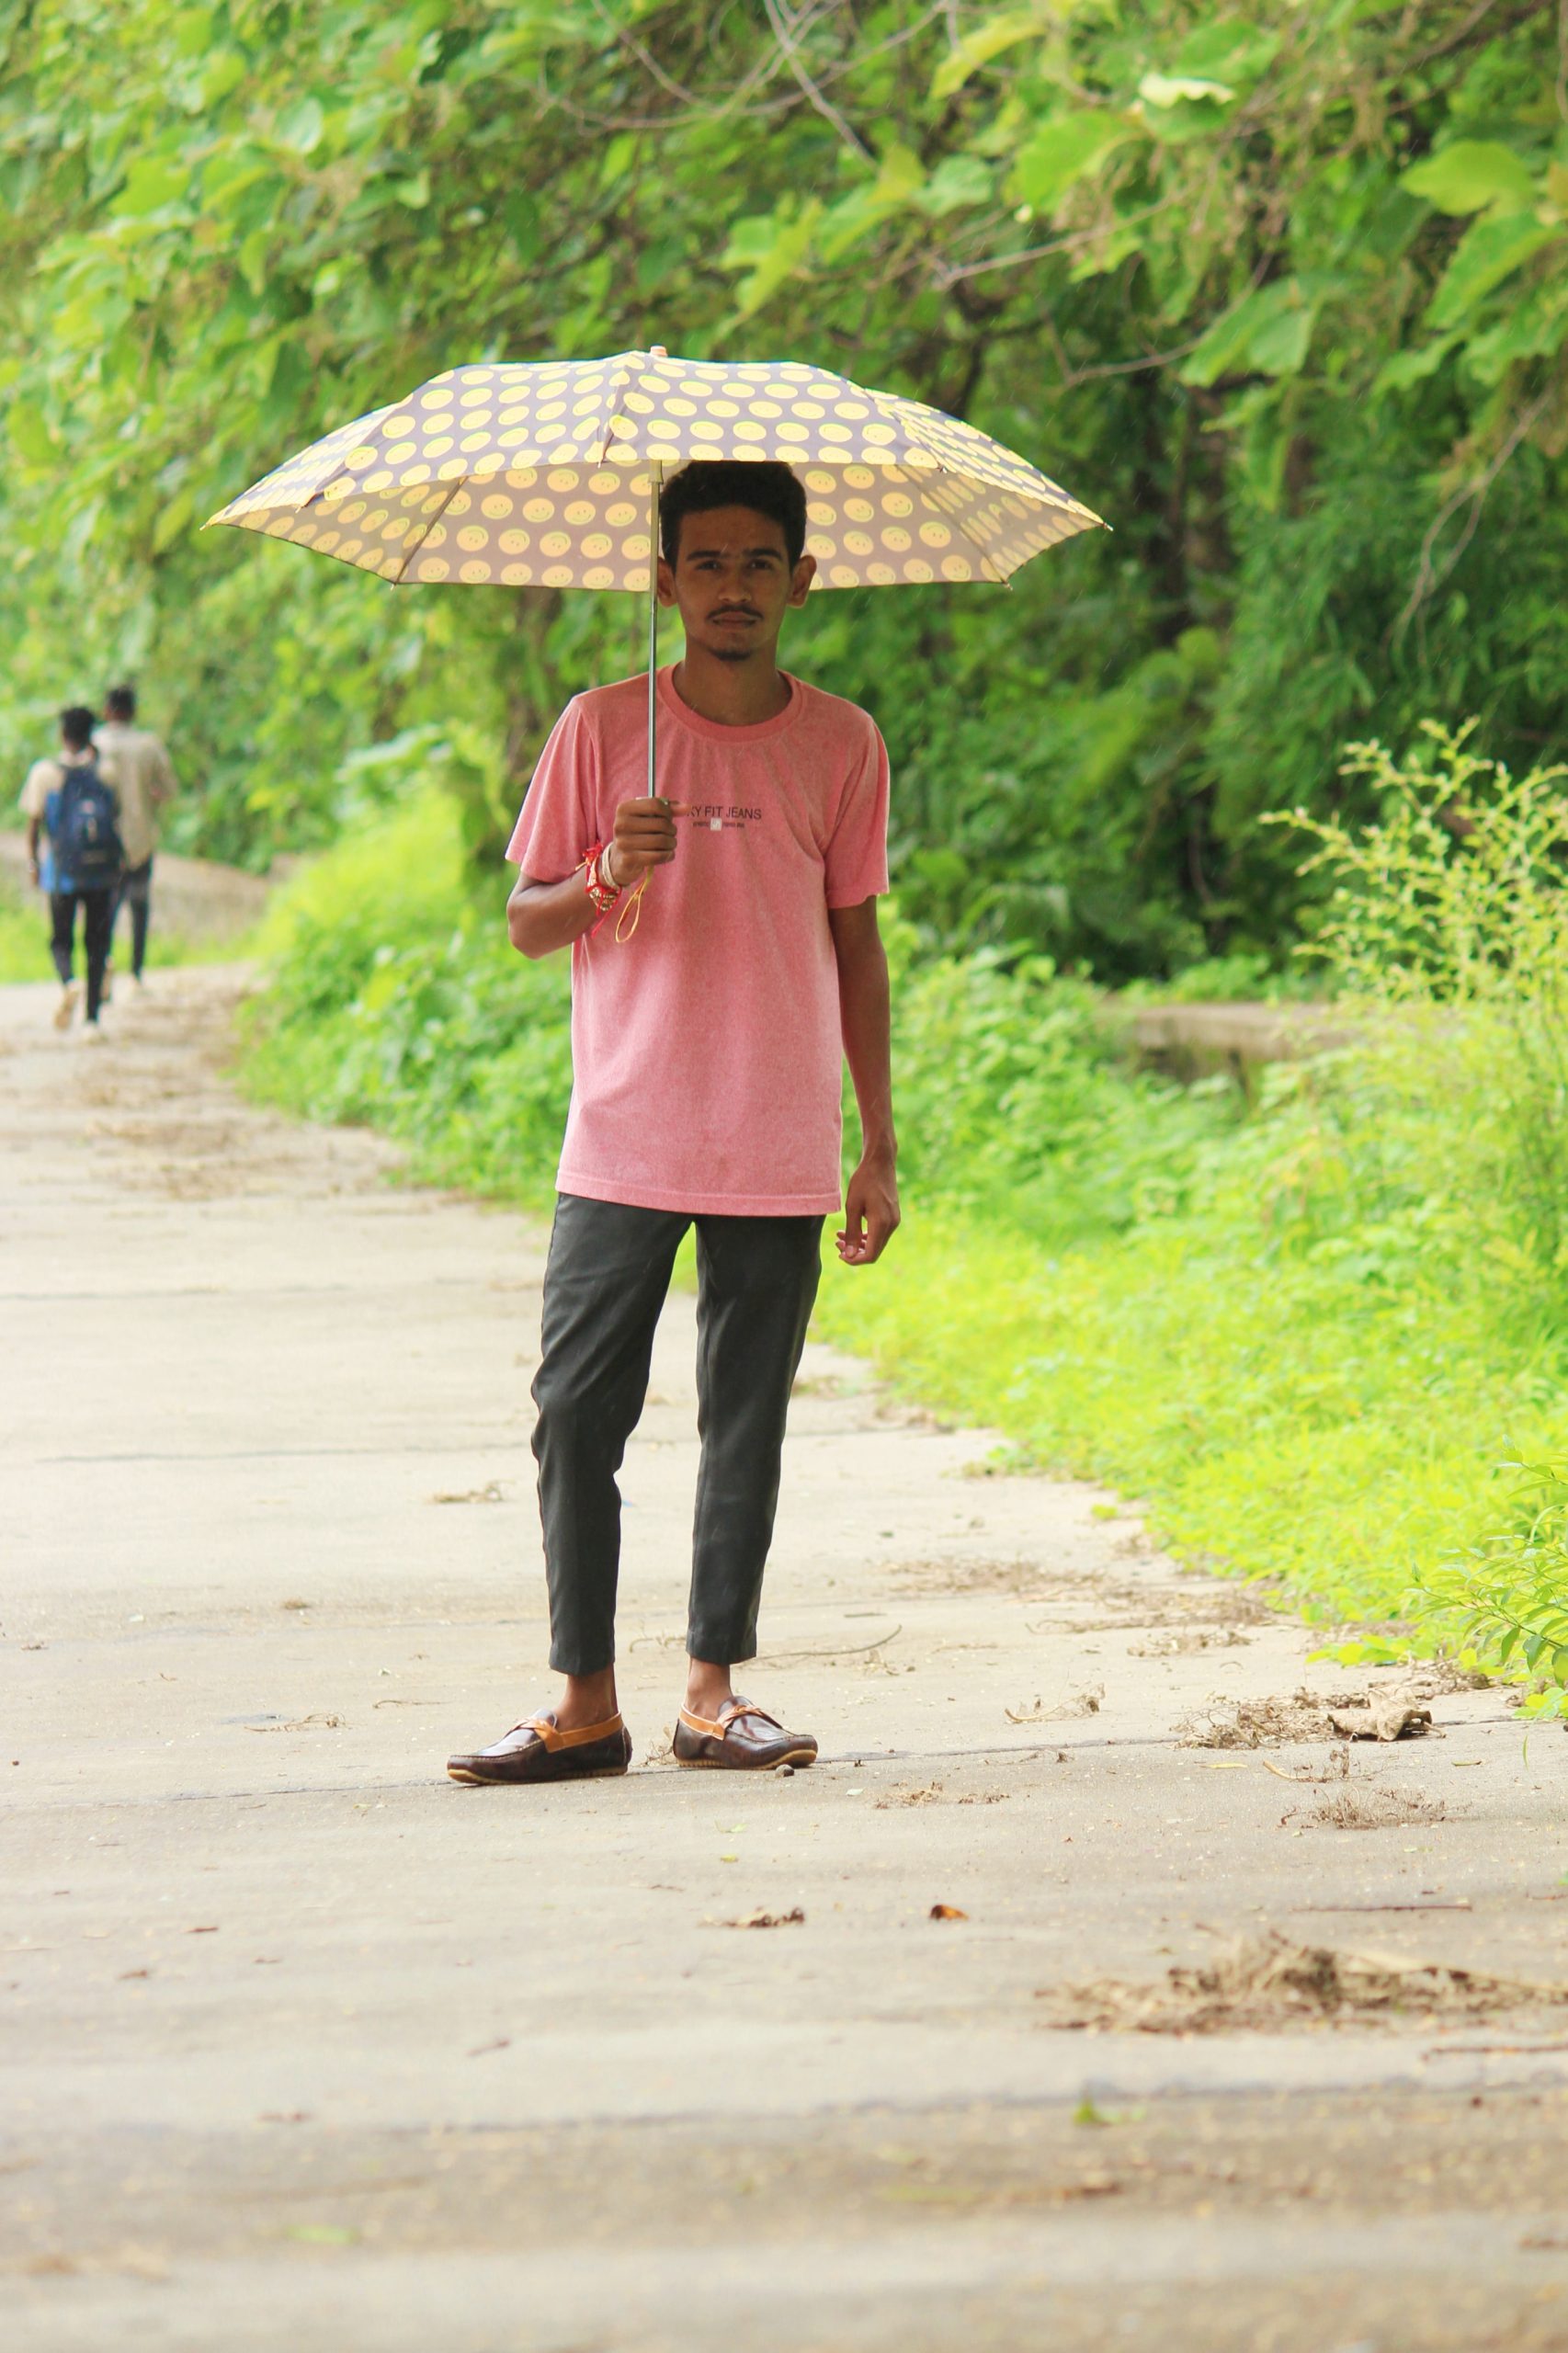 A boy with an umbrella